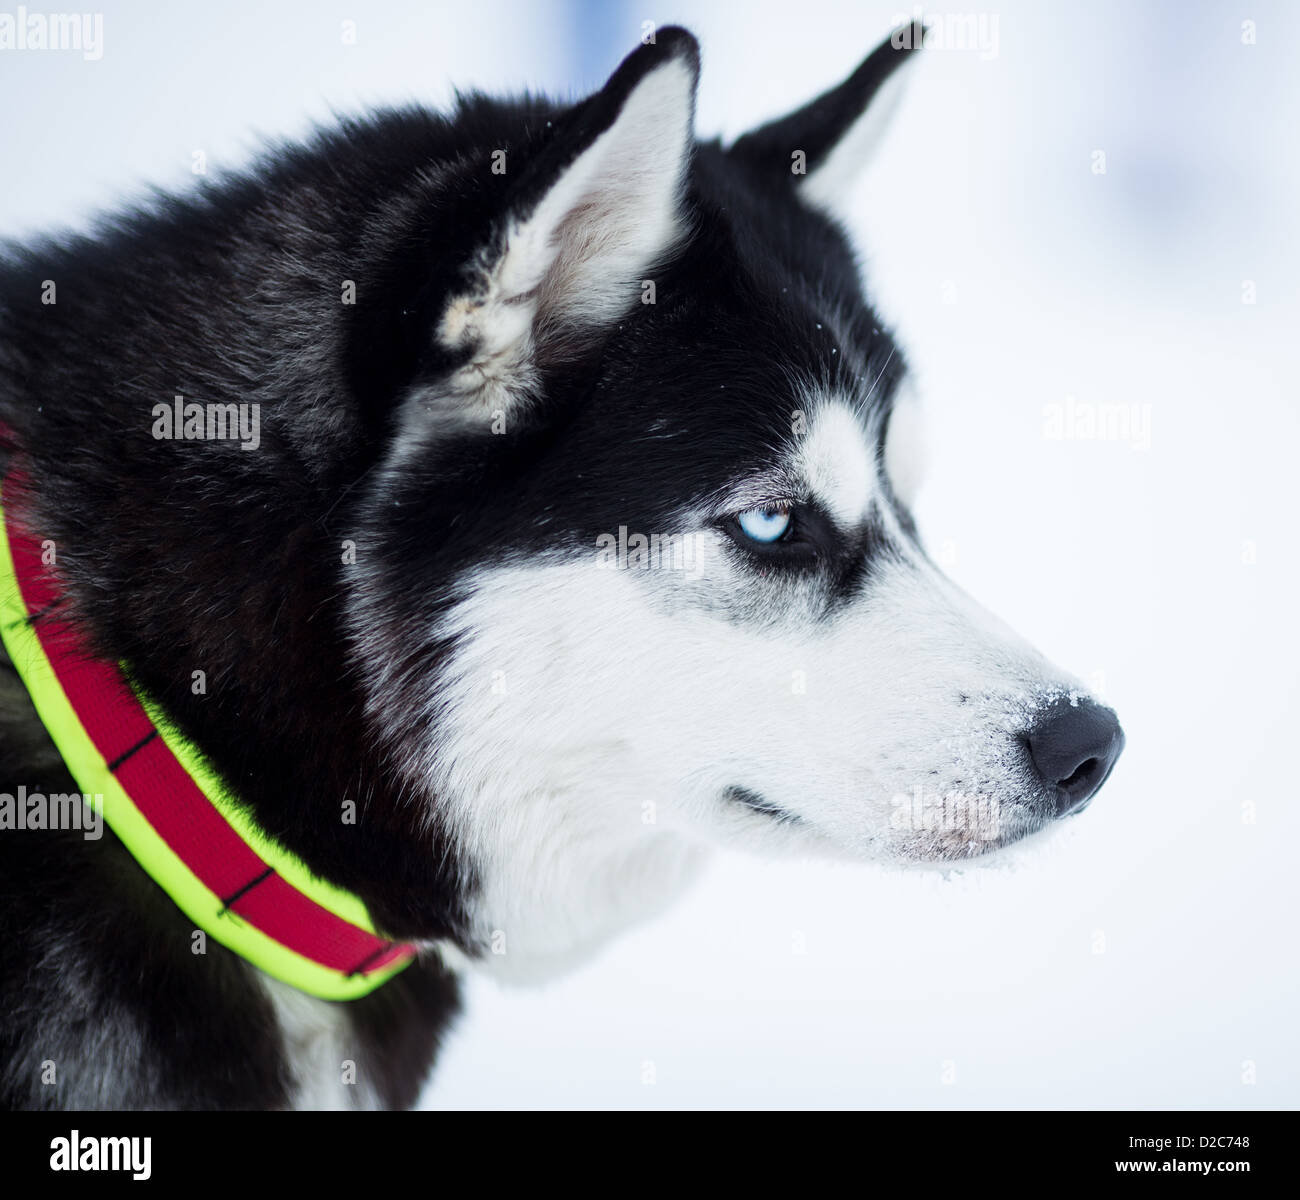 husky dog portrait Stock Photo